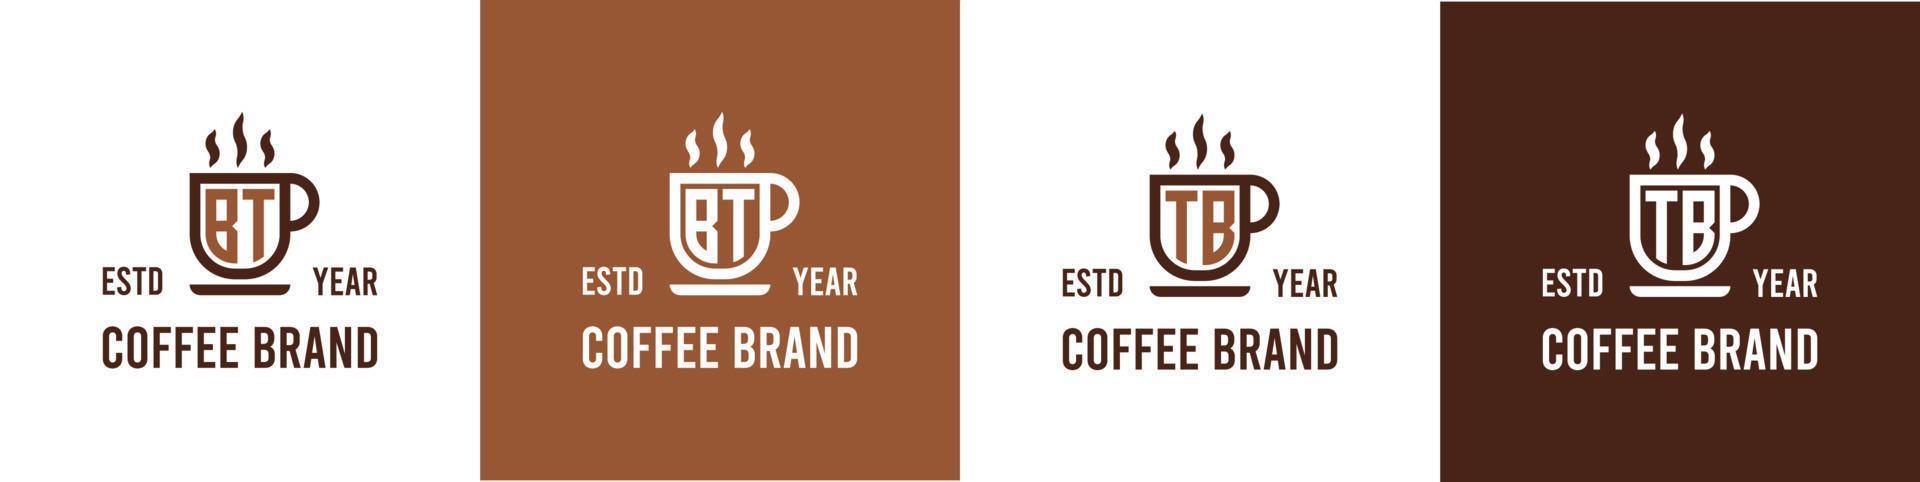 carta bt e tb café logotipo, adequado para qualquer o negócio relacionado para café, chá, ou de outros com bt ou tb iniciais. vetor